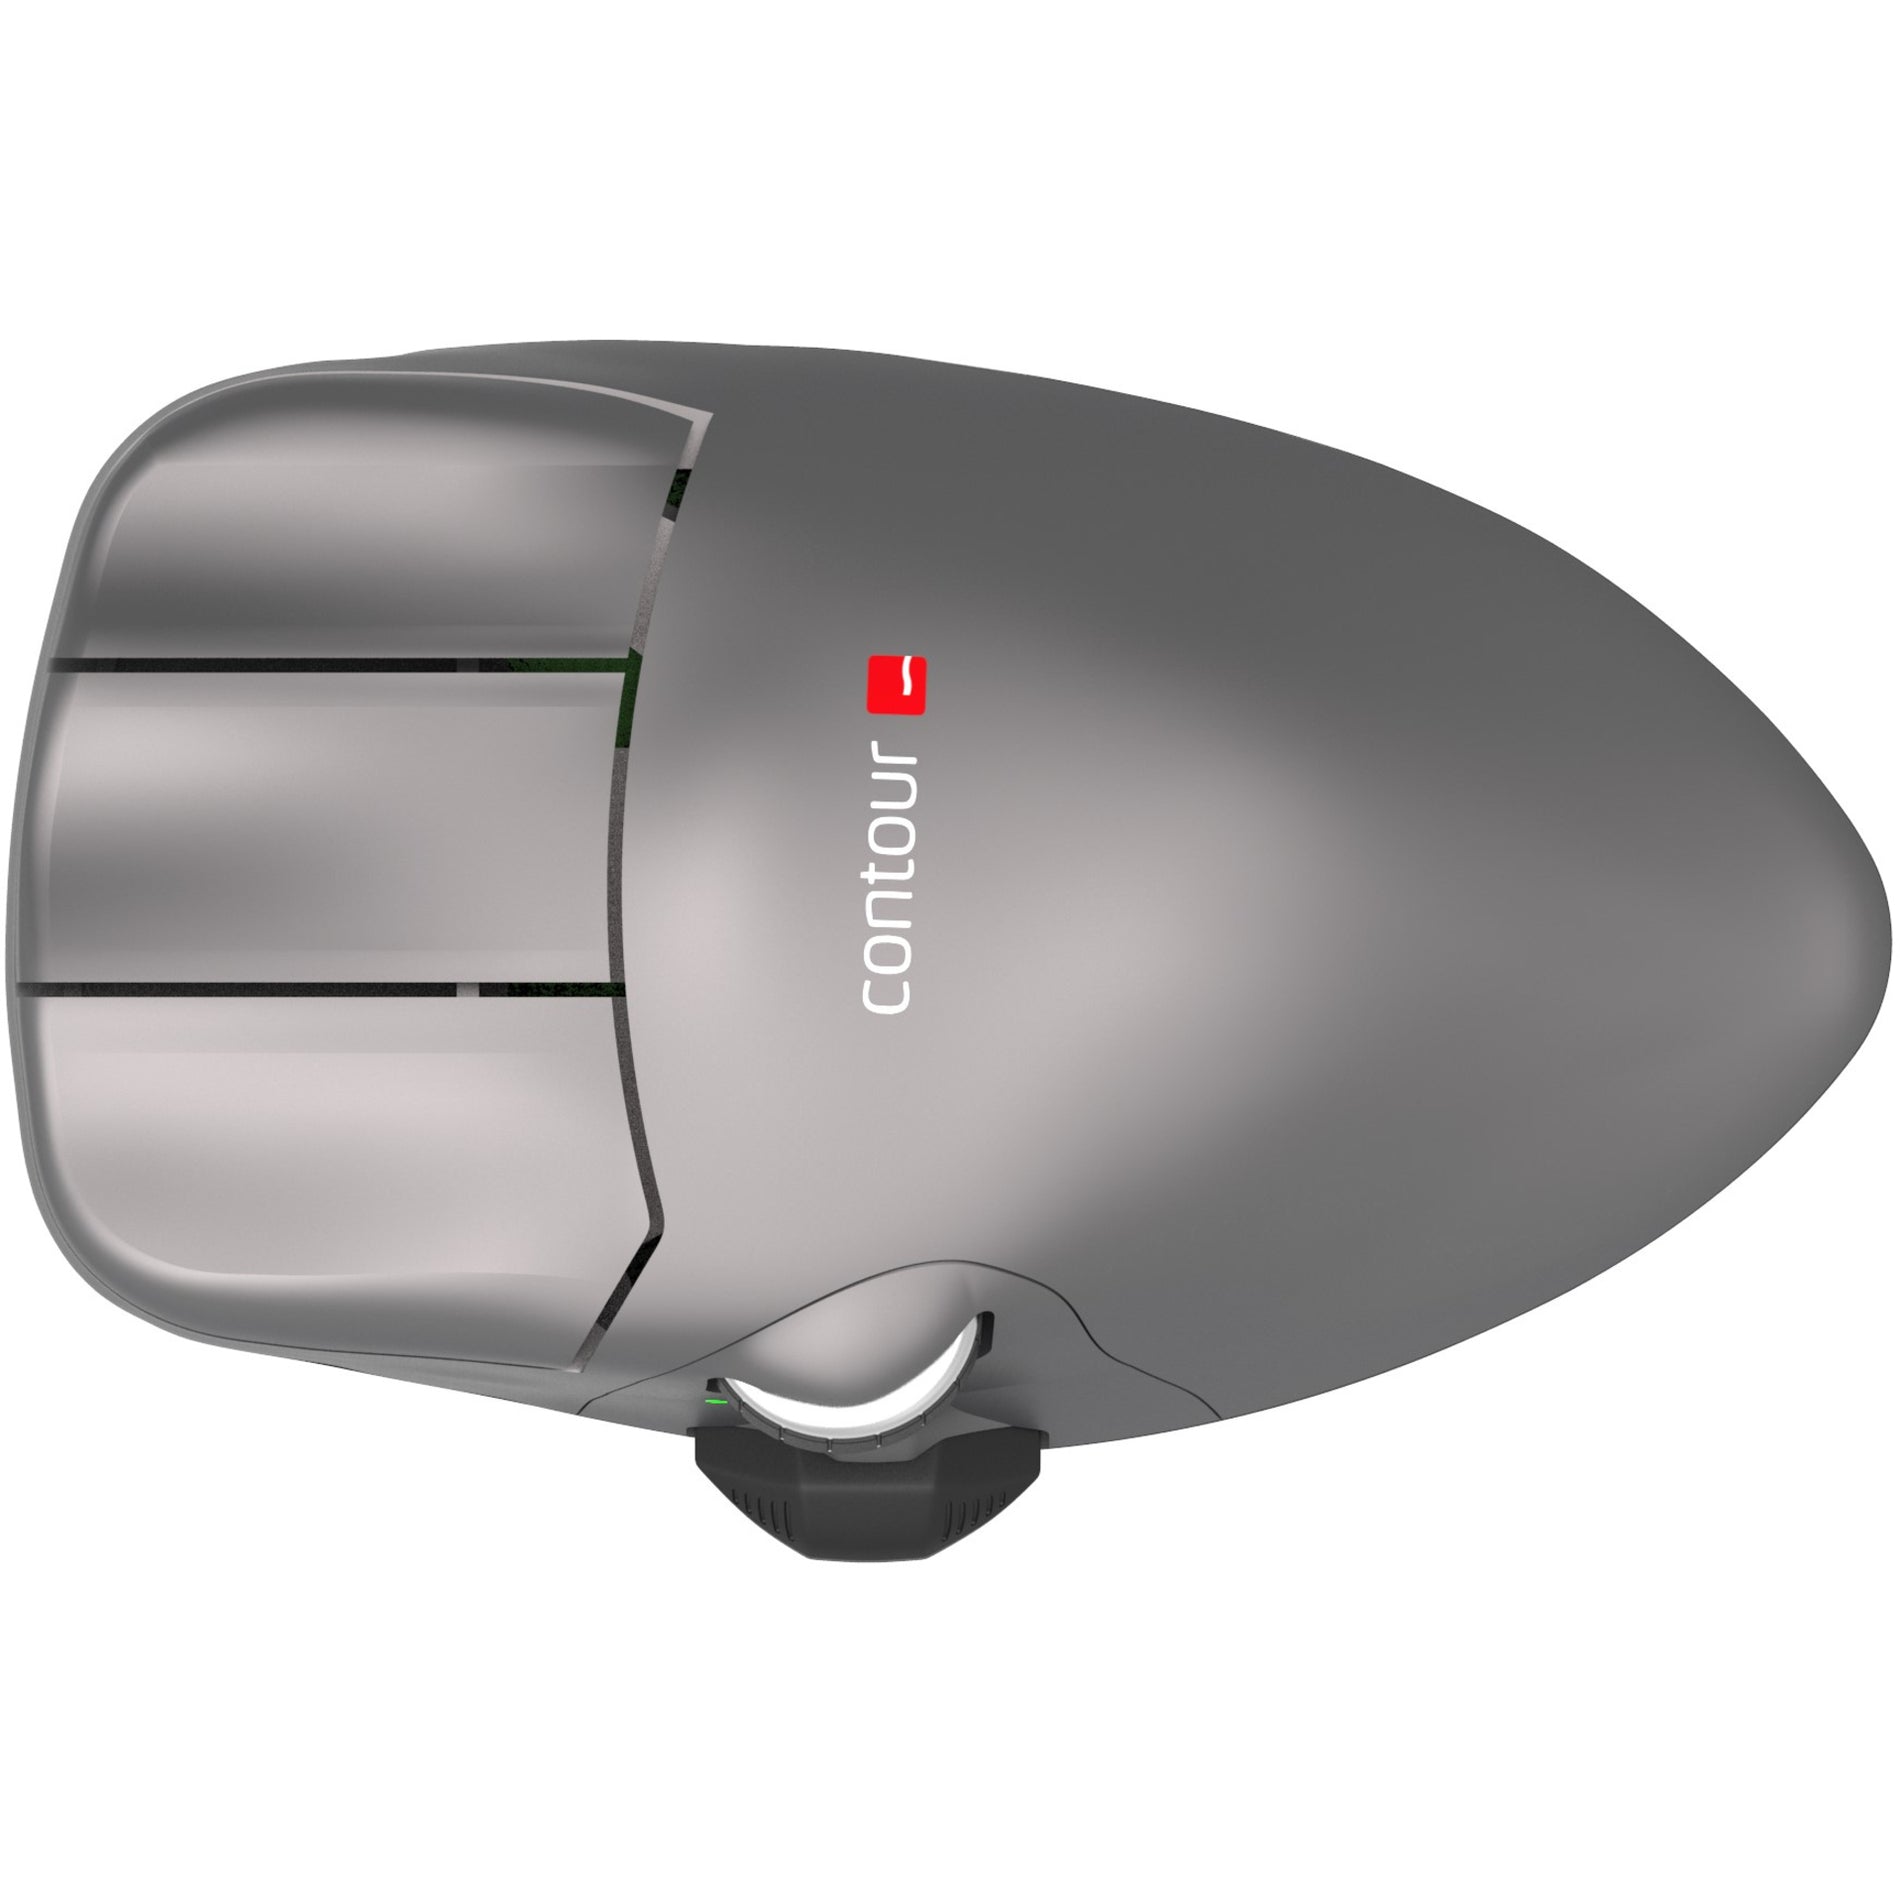 Contour CMO-GM-M-L-WL Mouse Wireless, Left-handed Ergonomic Fit, 5 Buttons, 2800 dpi